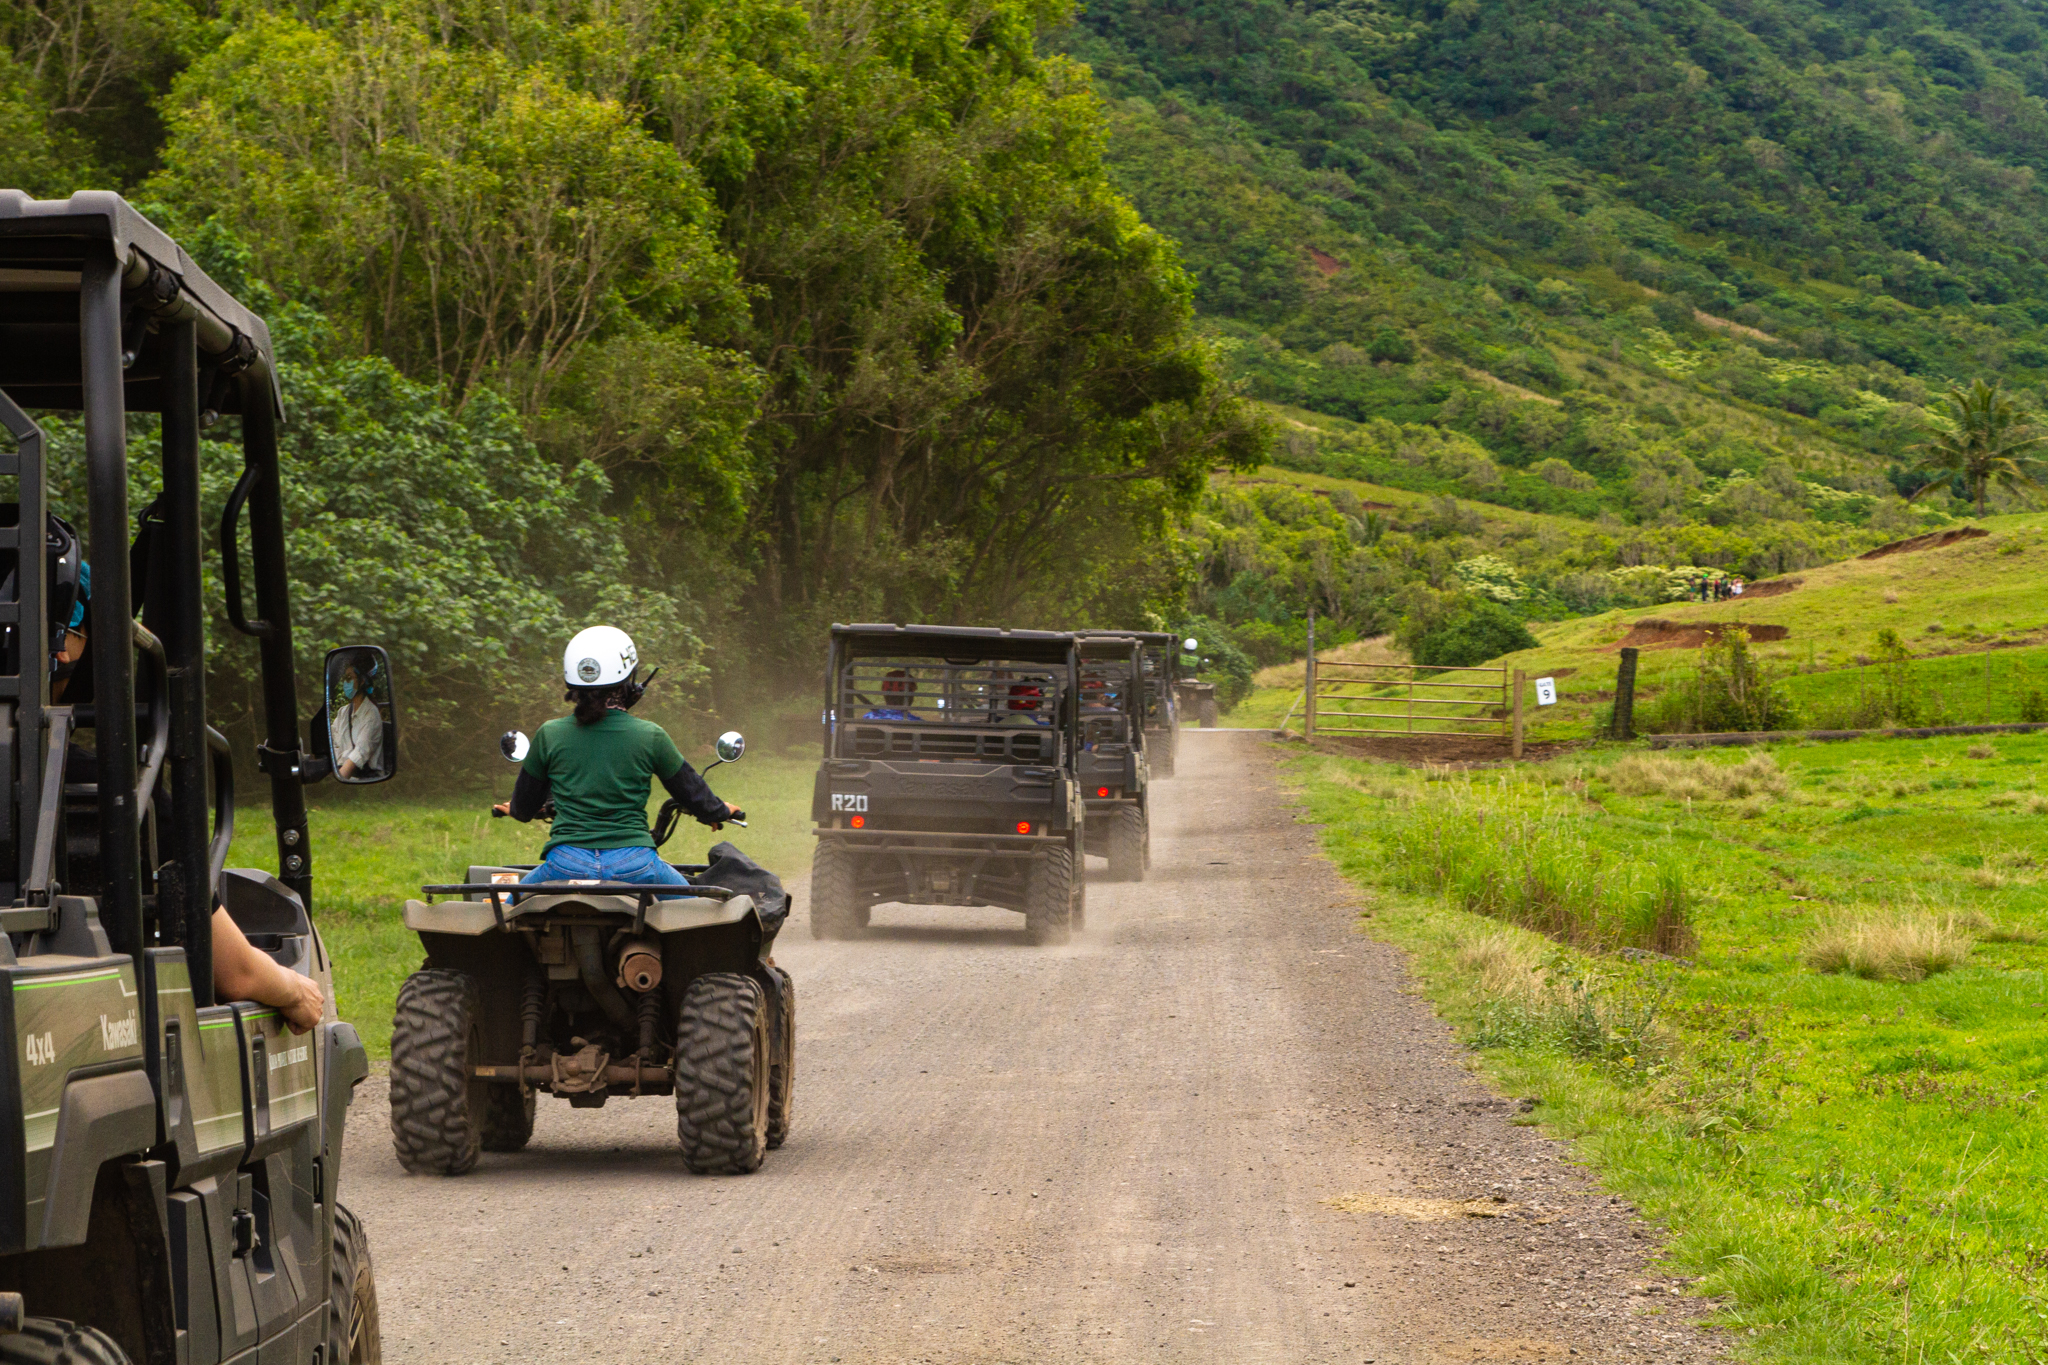 adventure guide to hawaii oahu and kauai press trip 2019 utv raptor tour at kualoa private nature reserve gp 9804